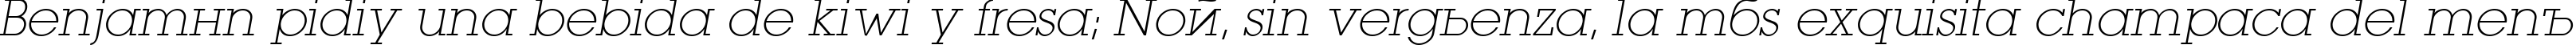 Пример написания шрифтом LugaExtra ExtraLight Oblique текста на испанском